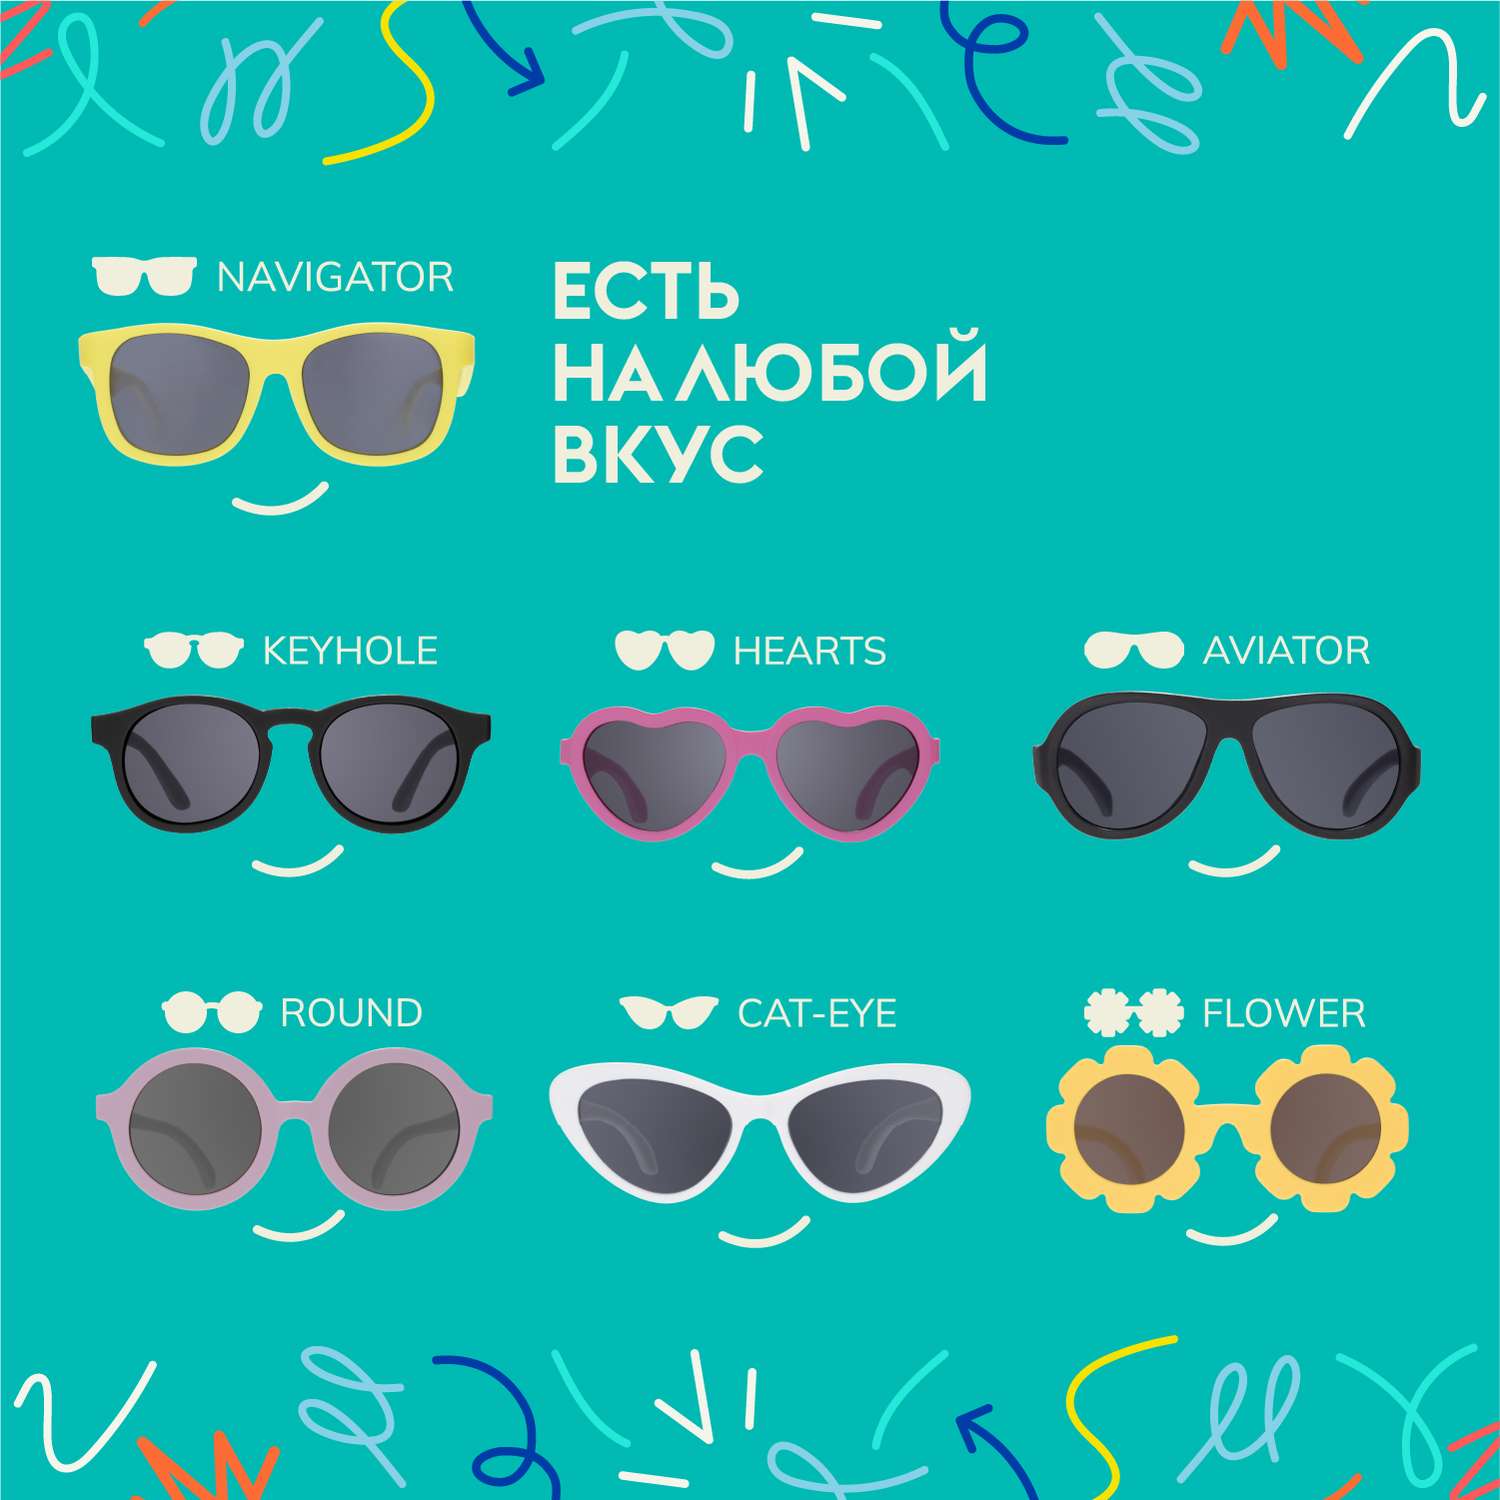 Солнцезащитные очки Babiators Blue Series Navigator Polarized Сёрфер 0-2 BLU-019 - фото 7